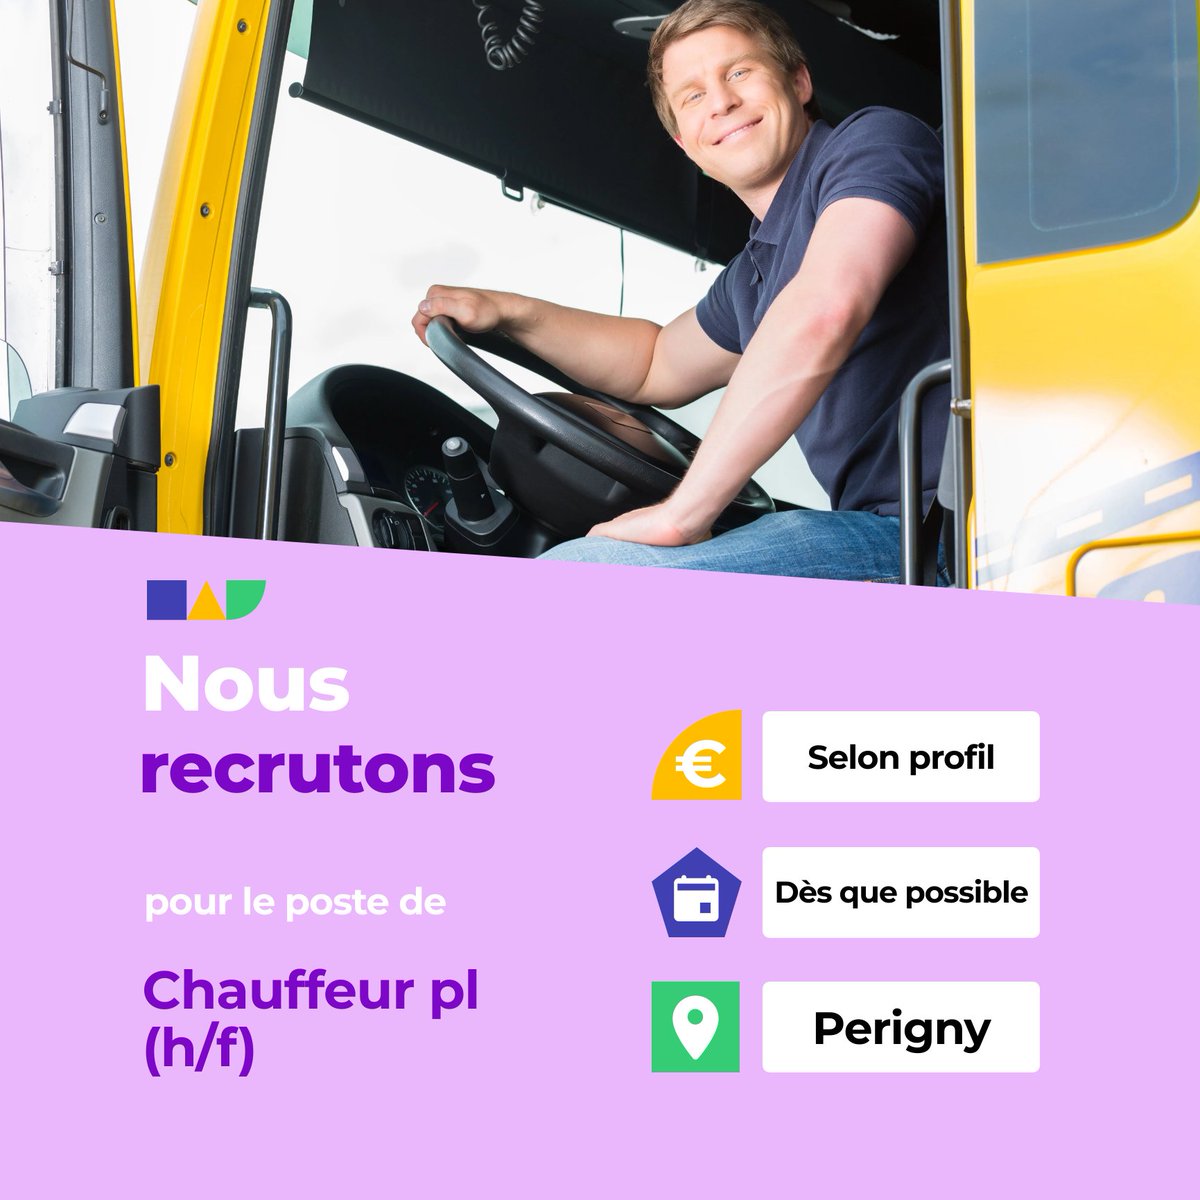 🛎️ Nouvelle offre d'emploi : Chauffeur pl (h/f)
🌎 Perigny (17180)
📅 Démarrage dans les 7 prochains jours
👉 Plus d'infos : jobs.iziwork.com/fr/offre-emplo…
#recrutement #intérim #emploi #OffreEmploi #job #iziwork